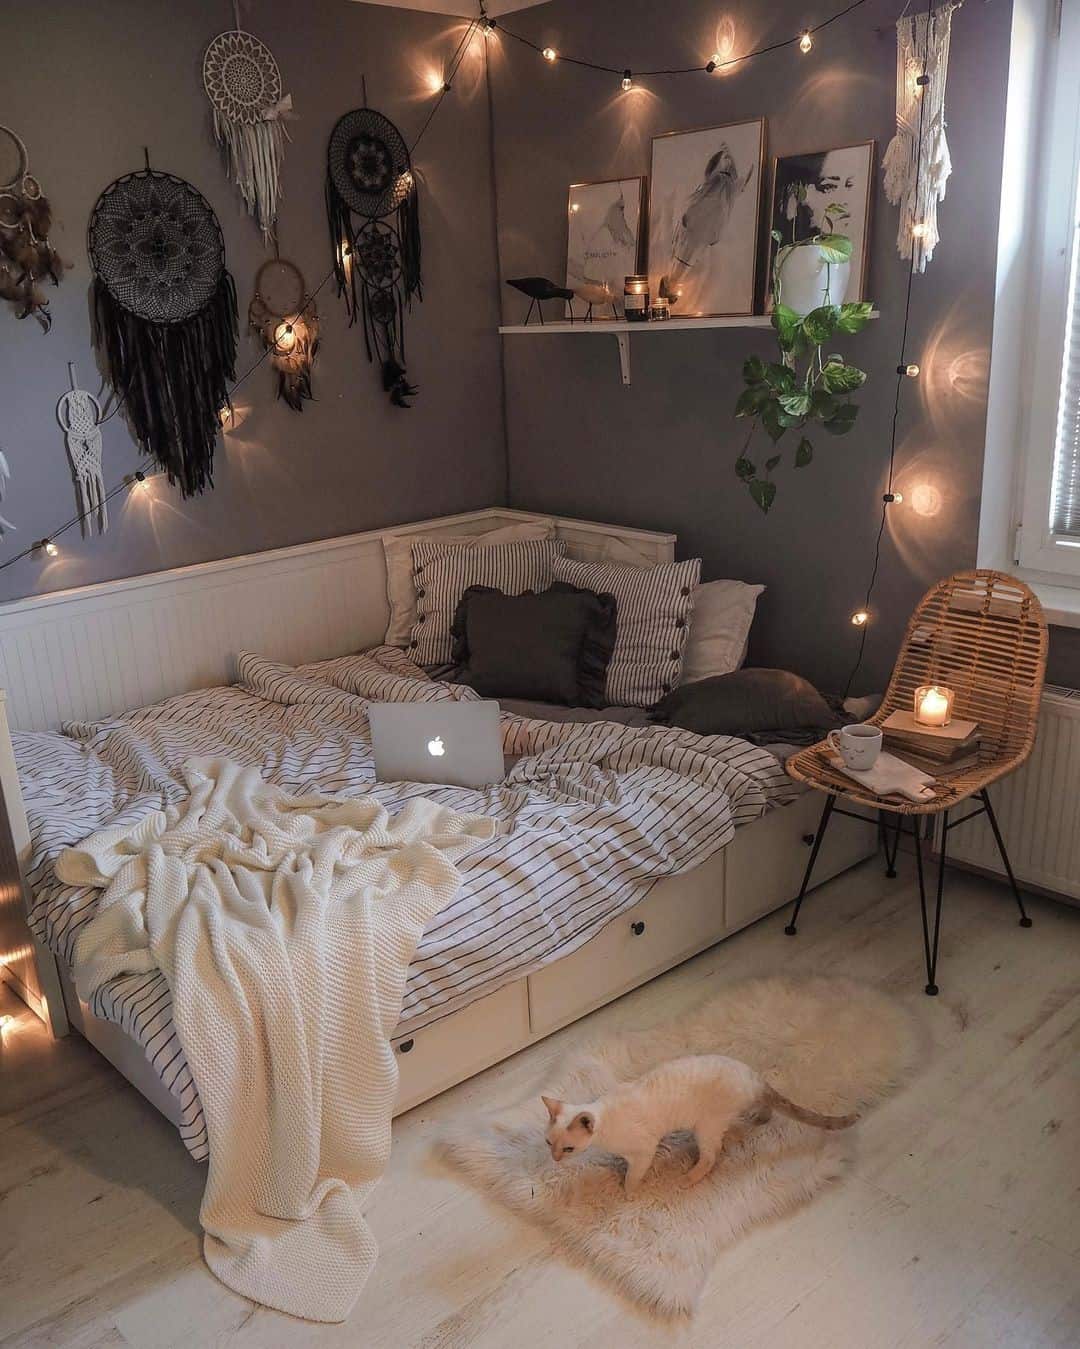 sofa bed dorm room ideas